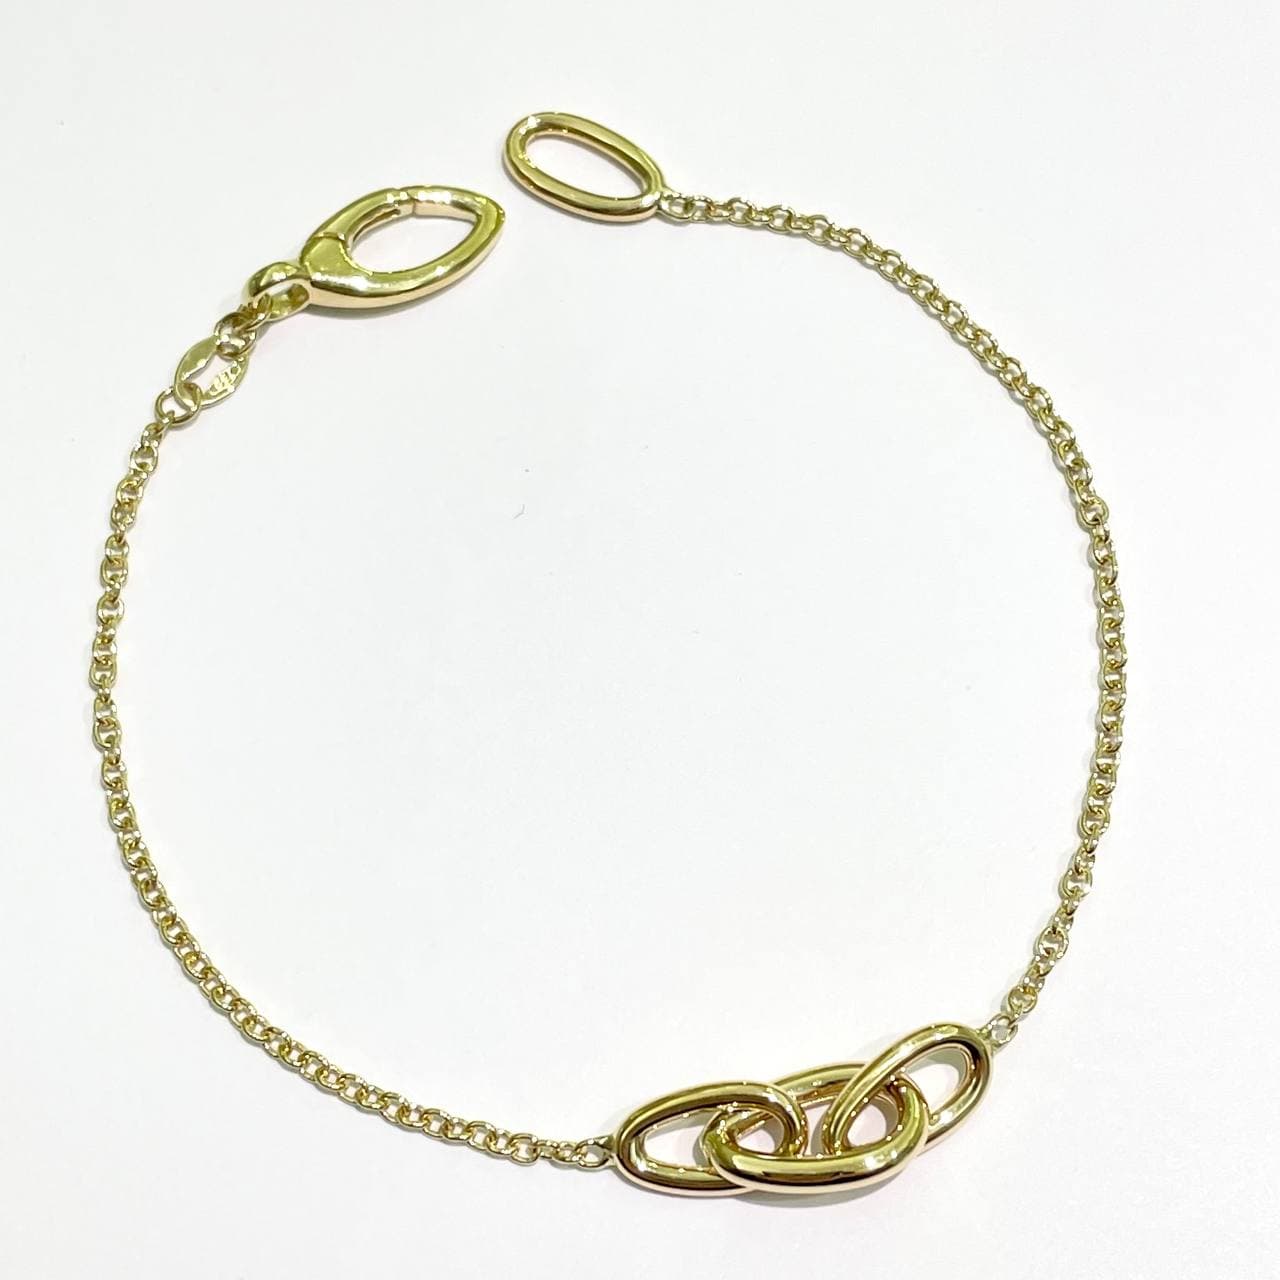 Bracciale in oro giallo 18ktcon tre anelli intrecciati nella parte centrale. Lunghezza 18,5 cm.  Larghezza anelli 0,5 cm.